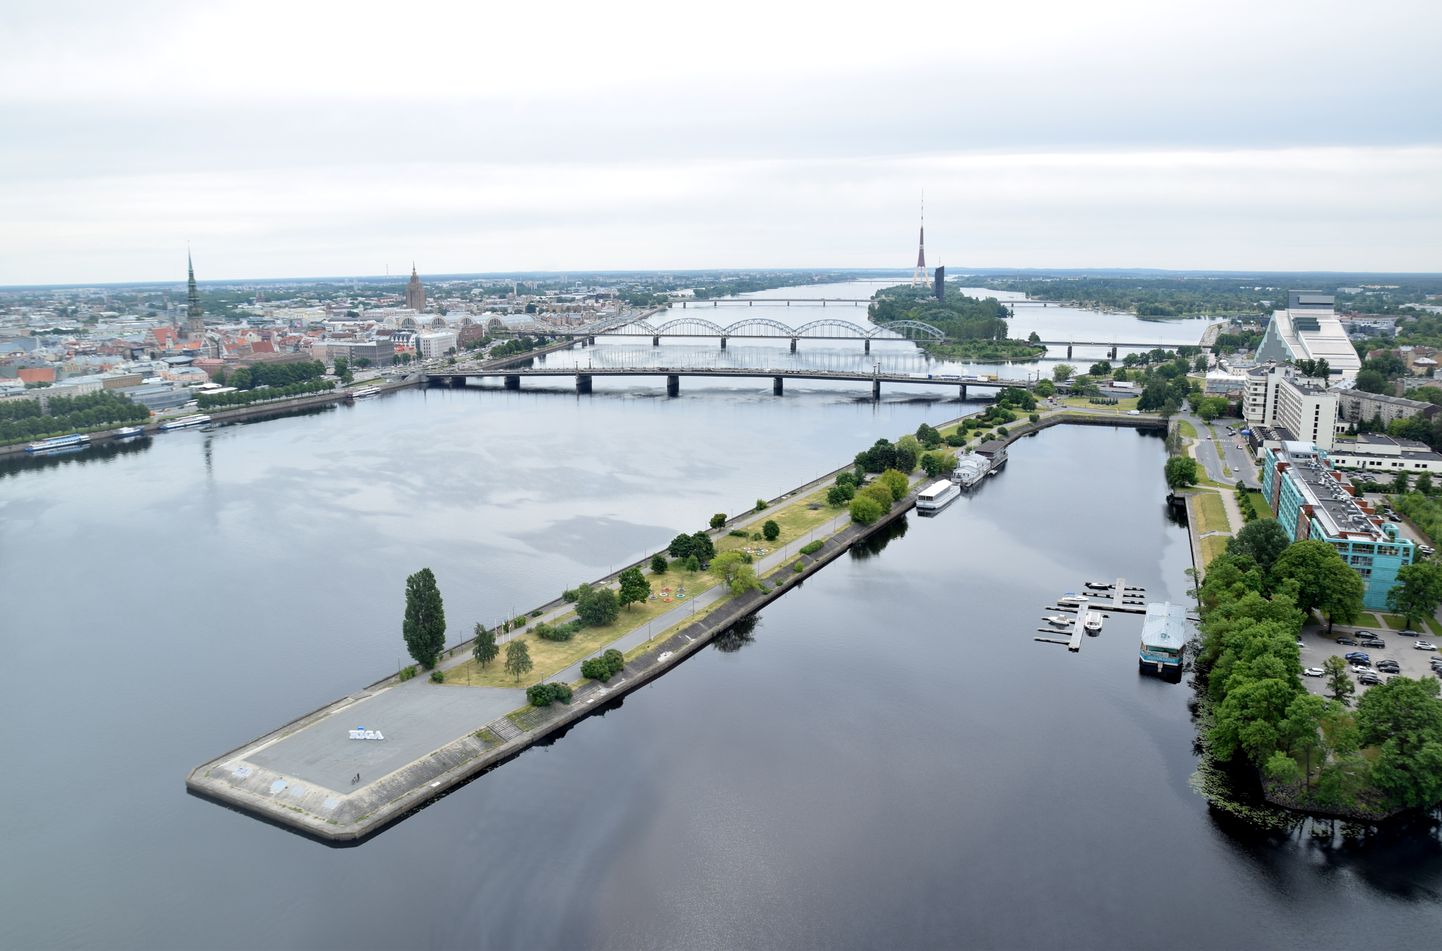 Skats uz AB dambi un Daugavas panorāma ar tiltiem.